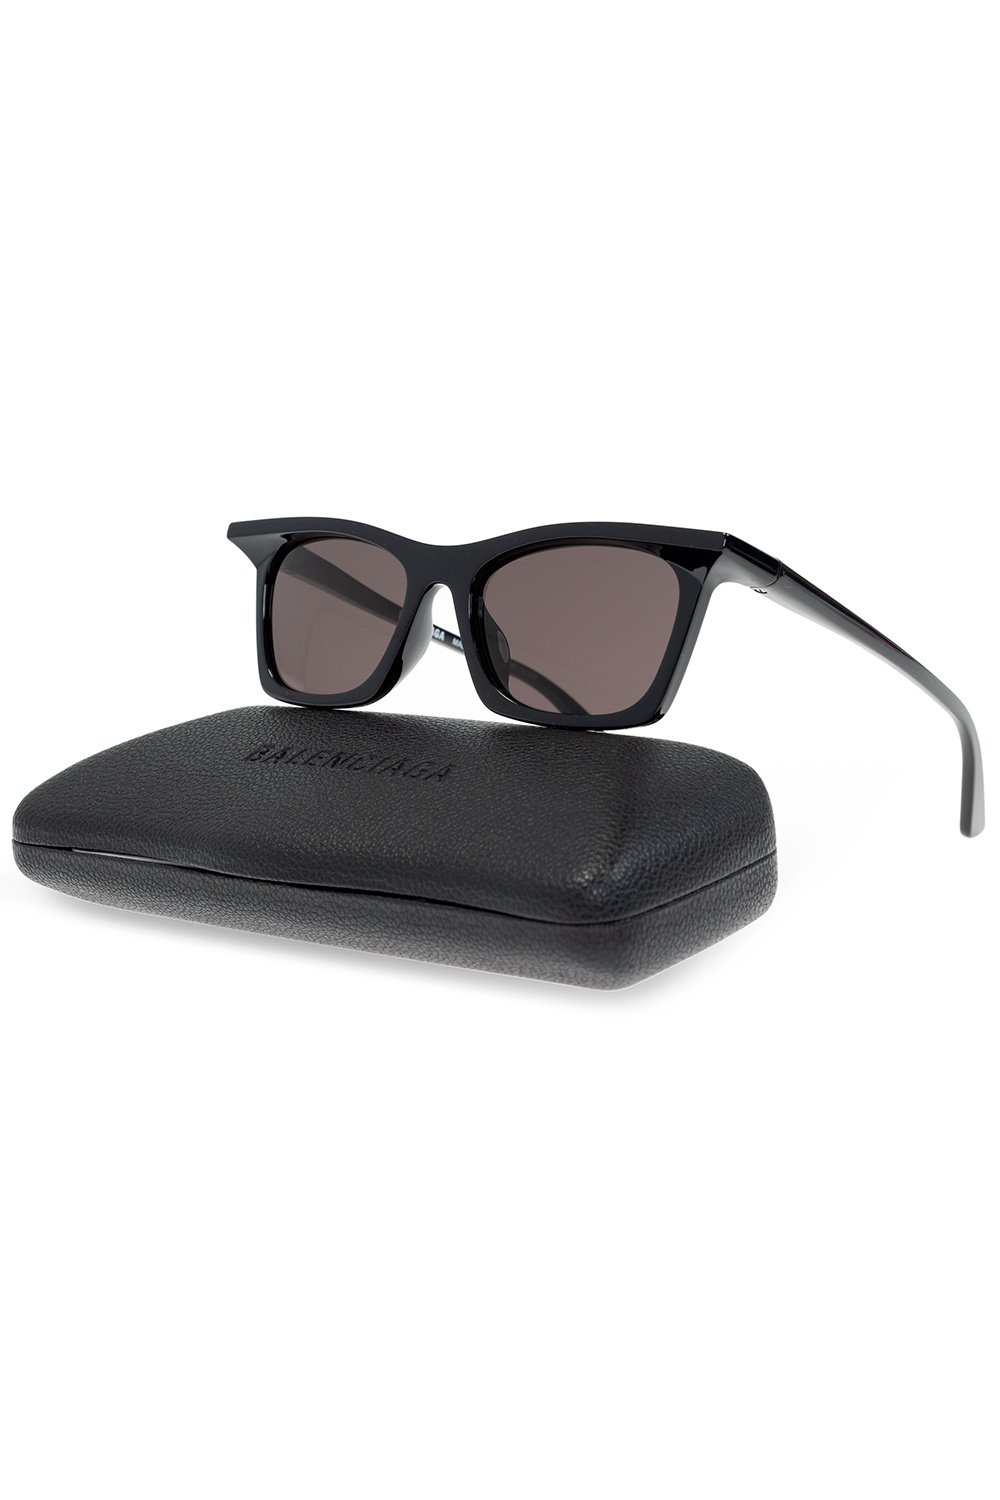 Balenciaga Sunglasses ISABEL MARANT 0037 S Black